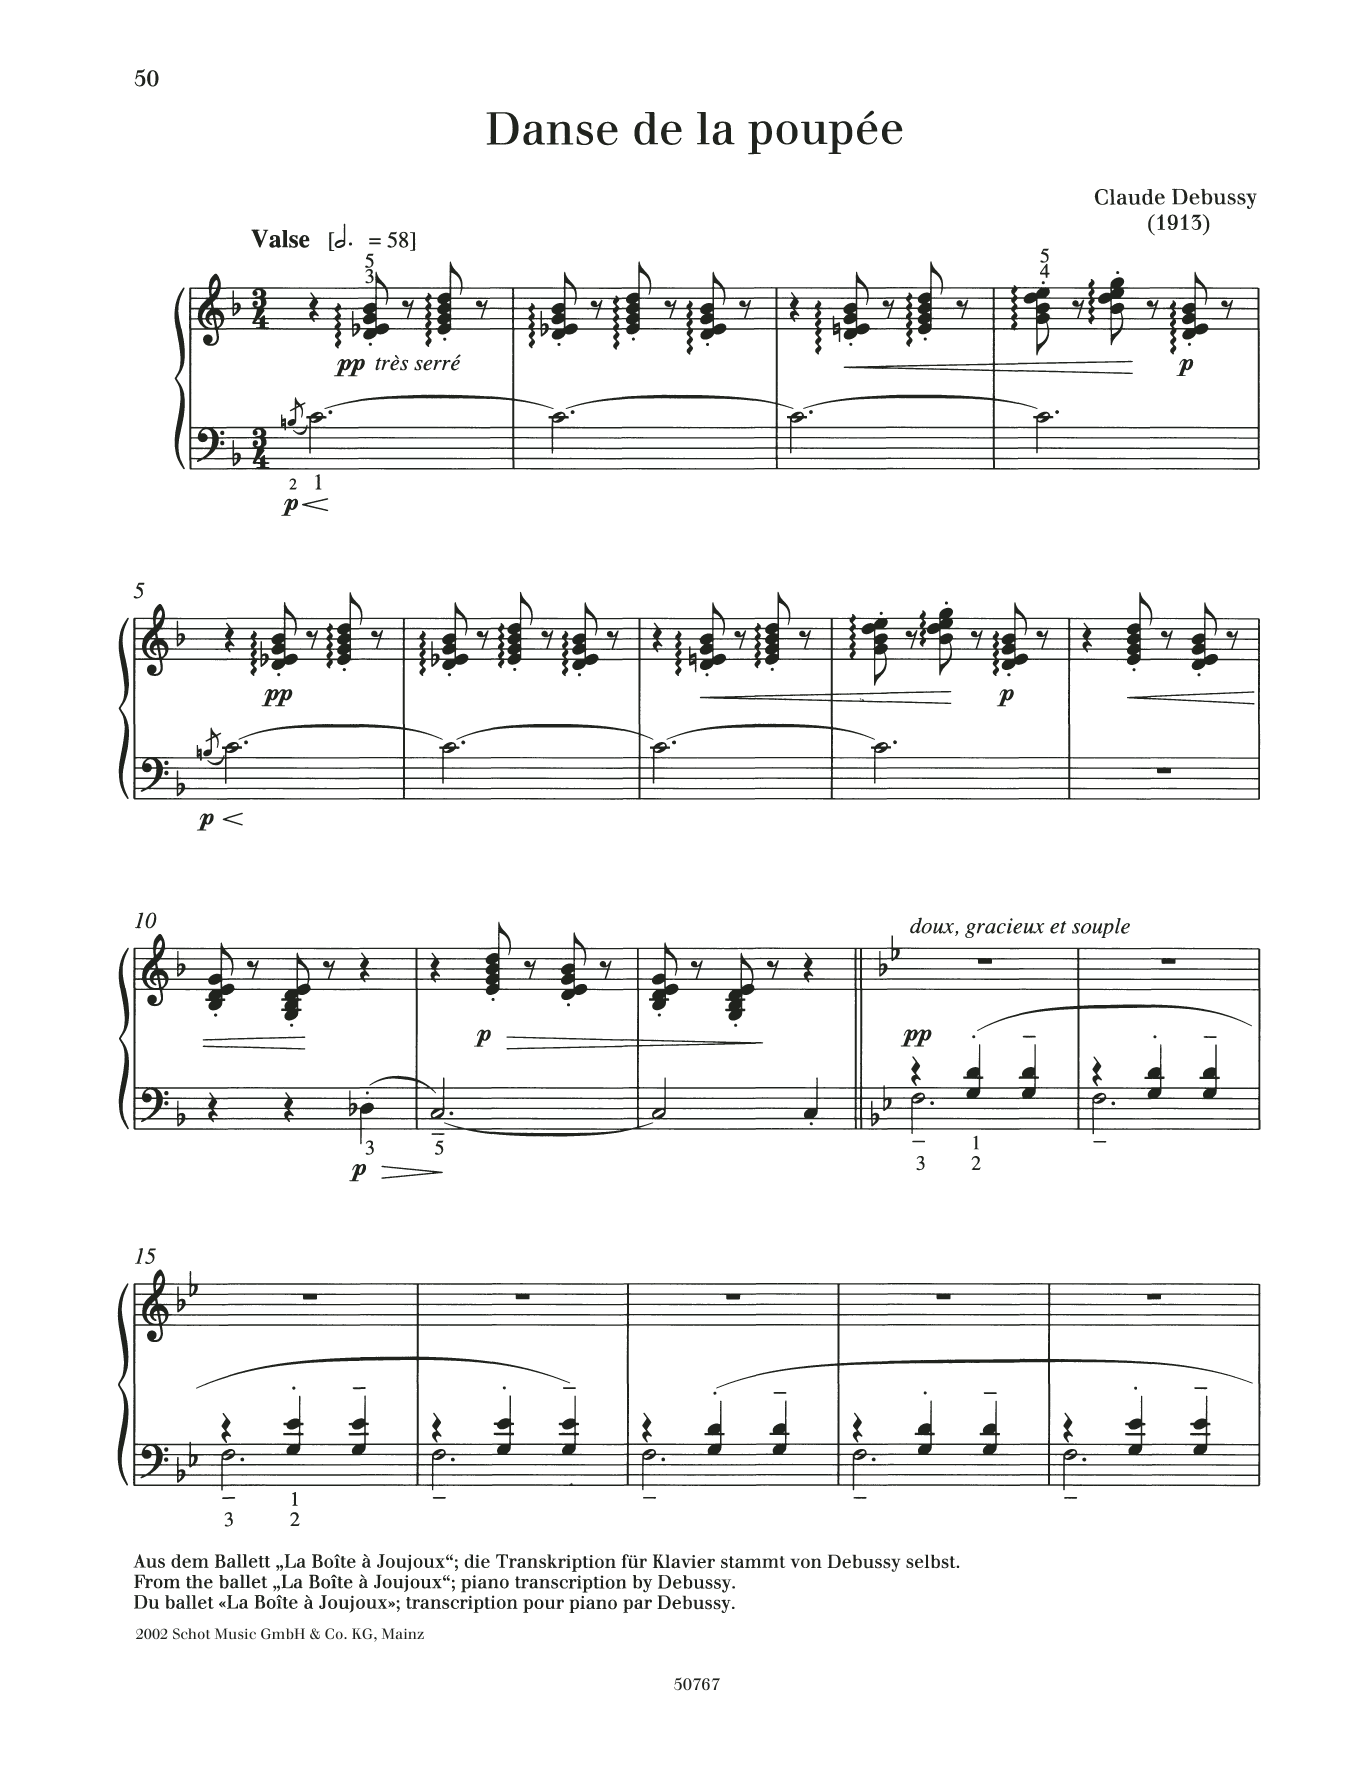 Download Claude Debussy Danse de la poupee Sheet Music